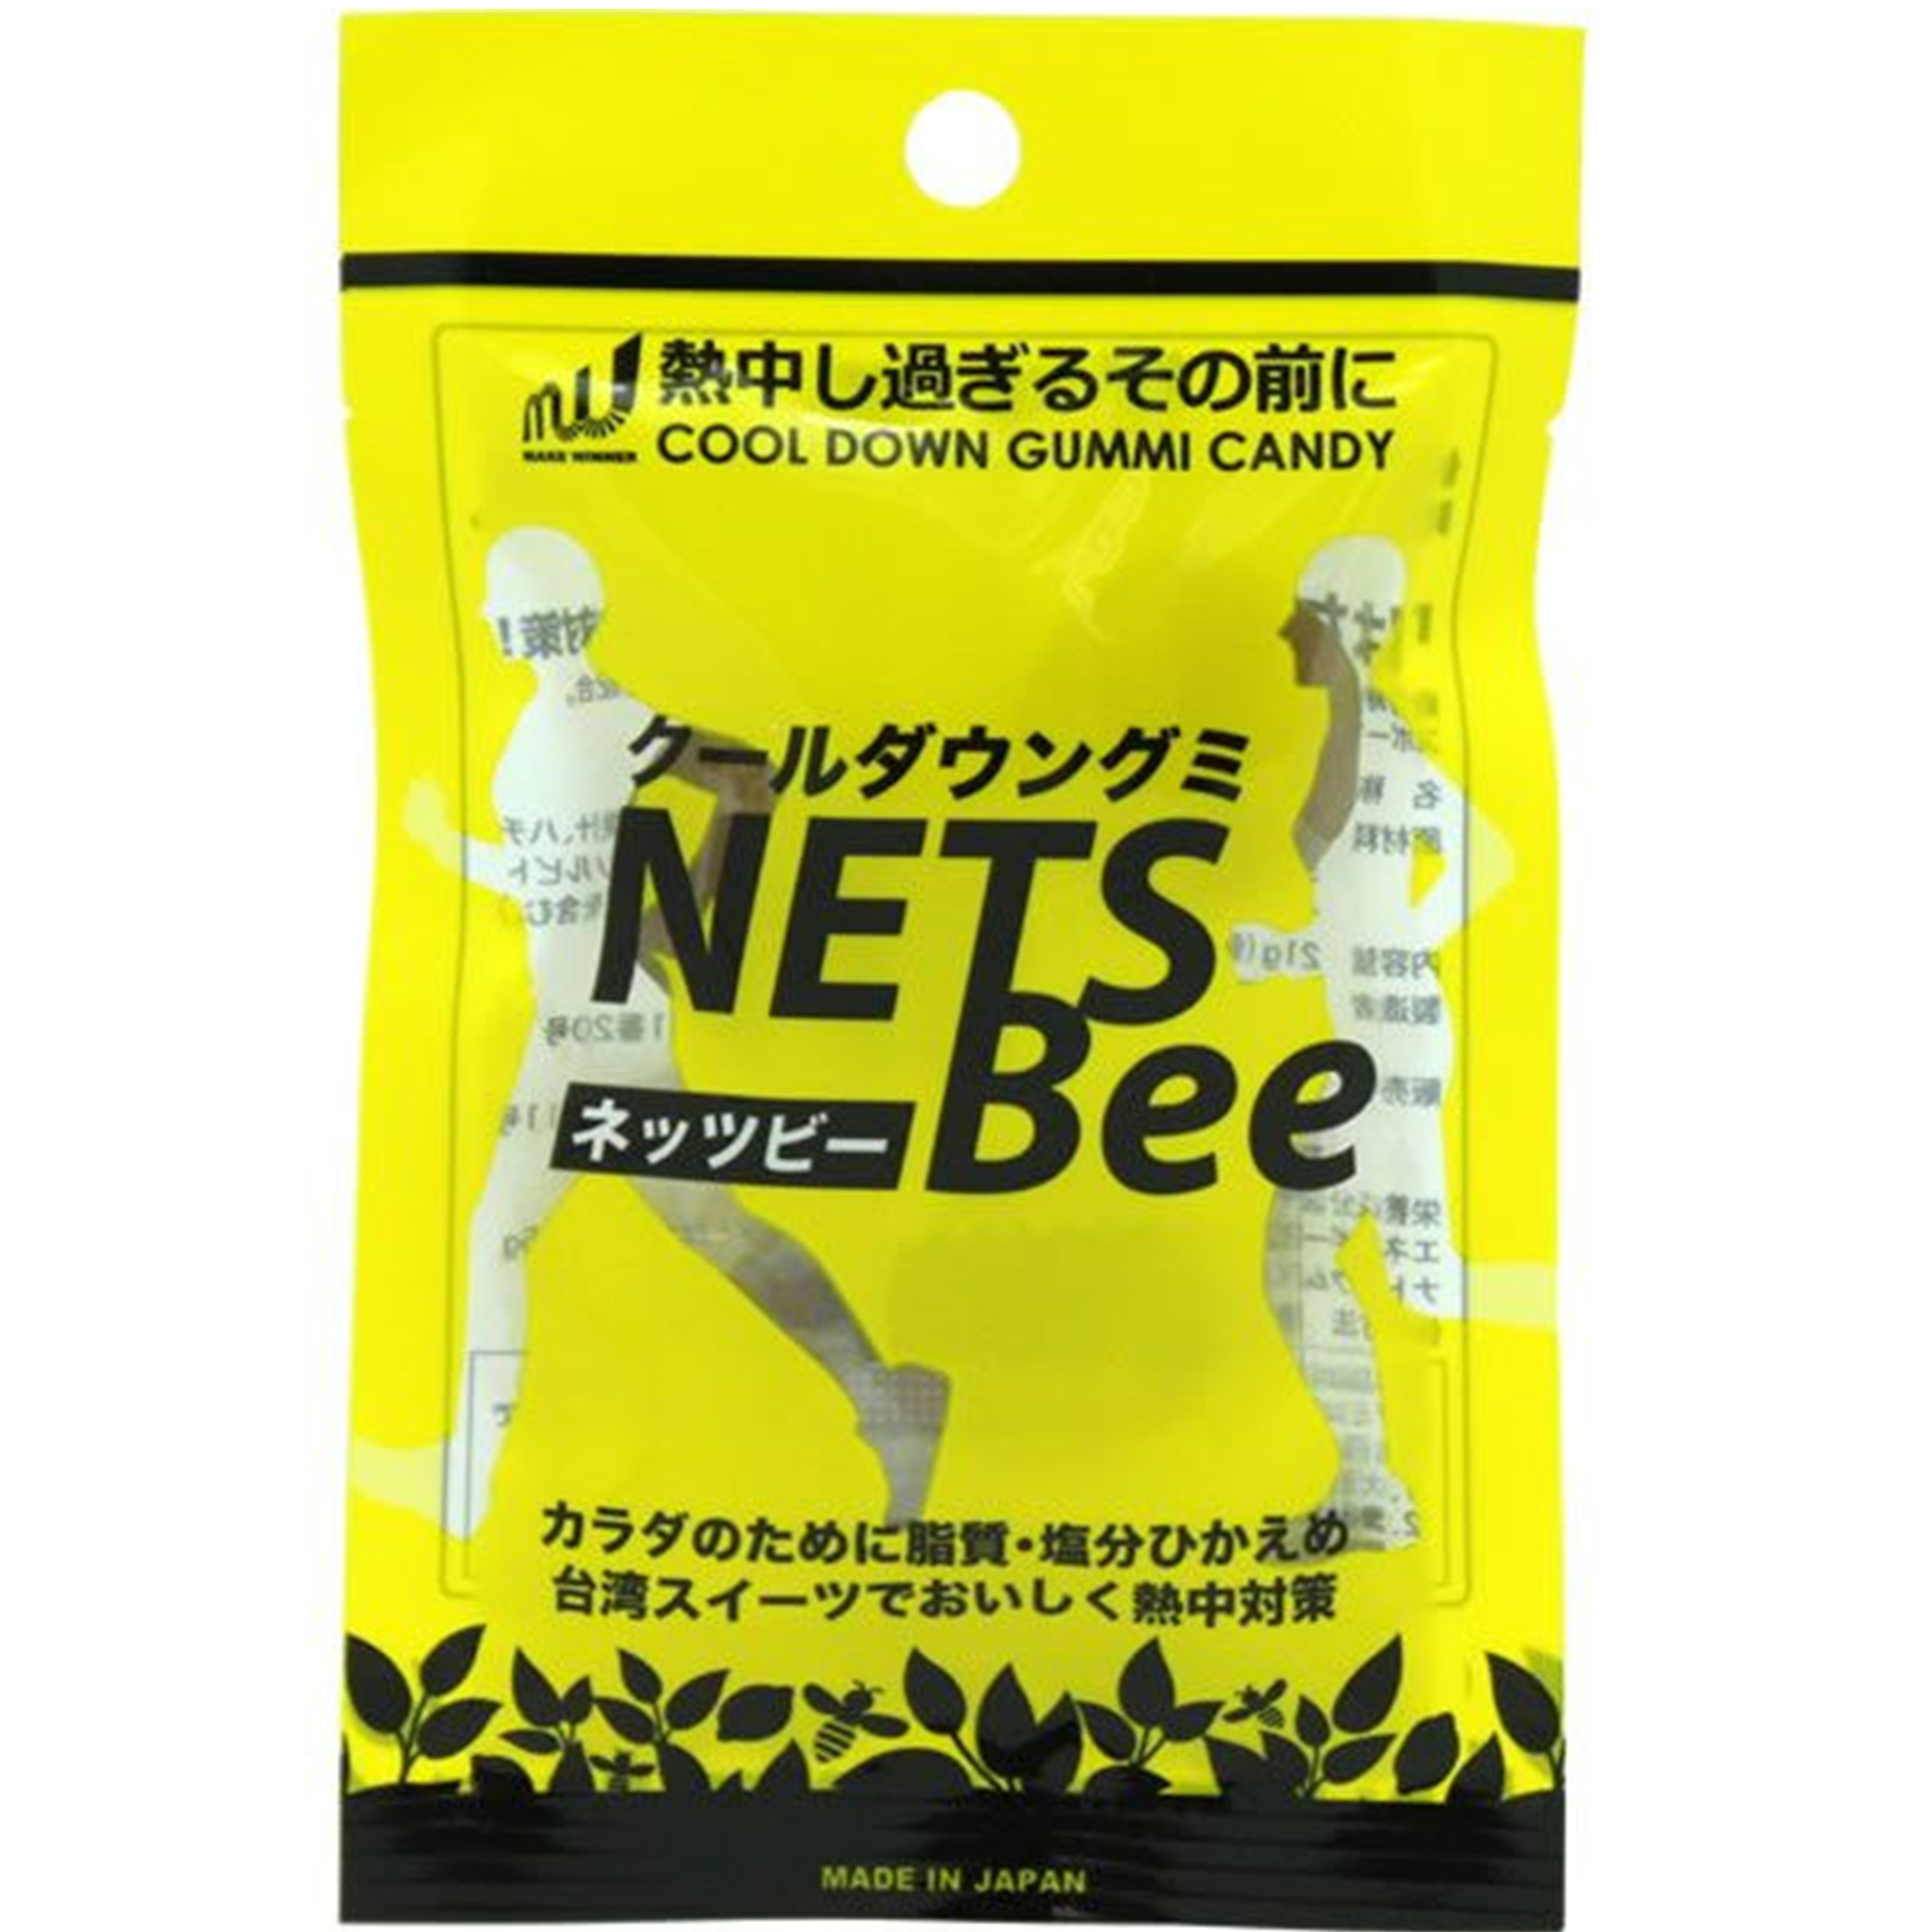 クールダウングミ NETS Bee